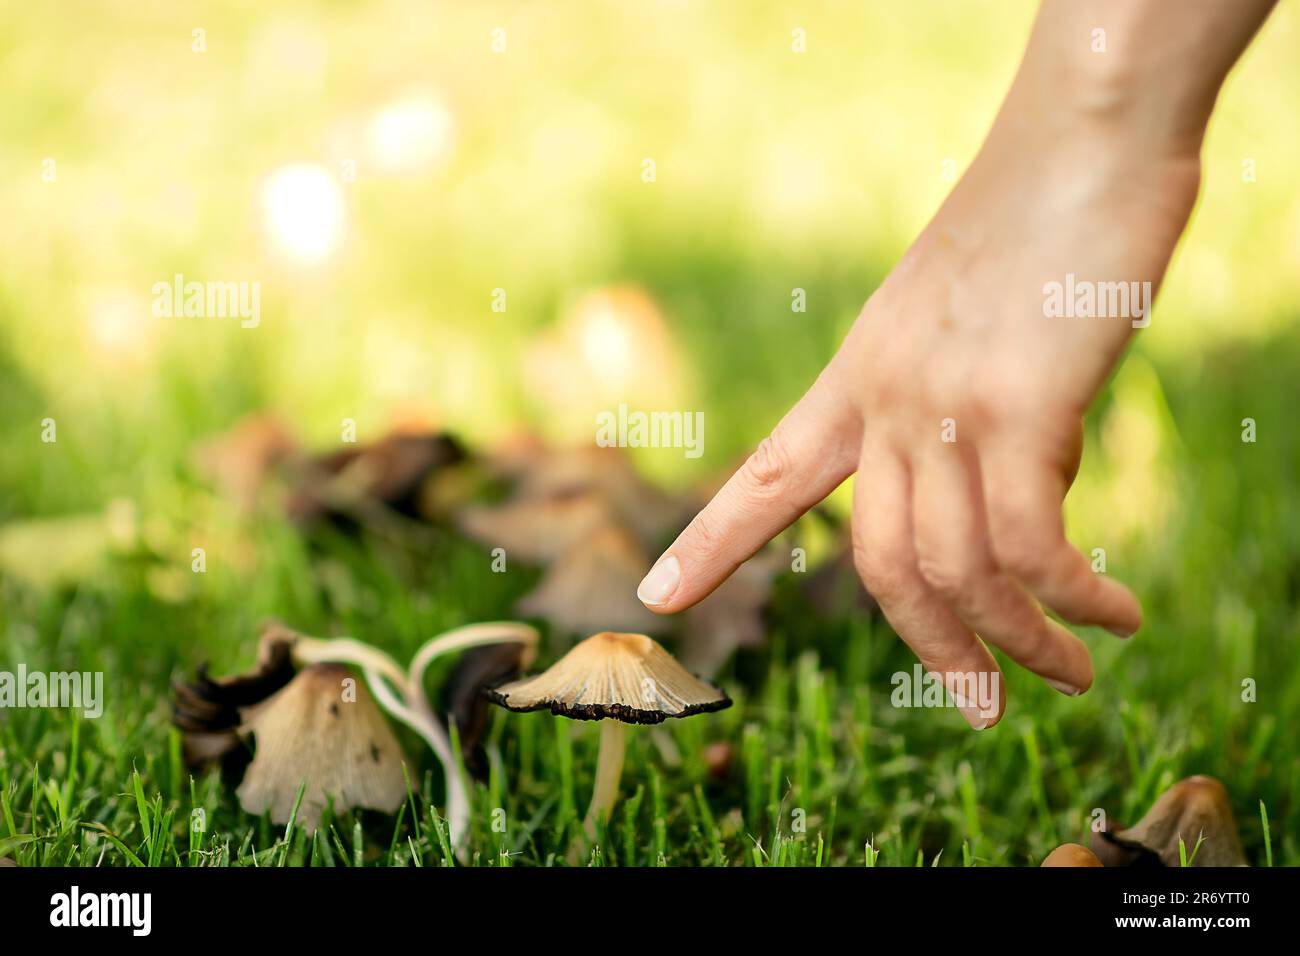 parken Sie im Frühling, nach dem Regen, eine junge weiße Frau, die ging, sah Pilze im grünen Gras, sie beugte sich, um die Pilzkappe mit ihrem Finger zu berühren Stockfoto